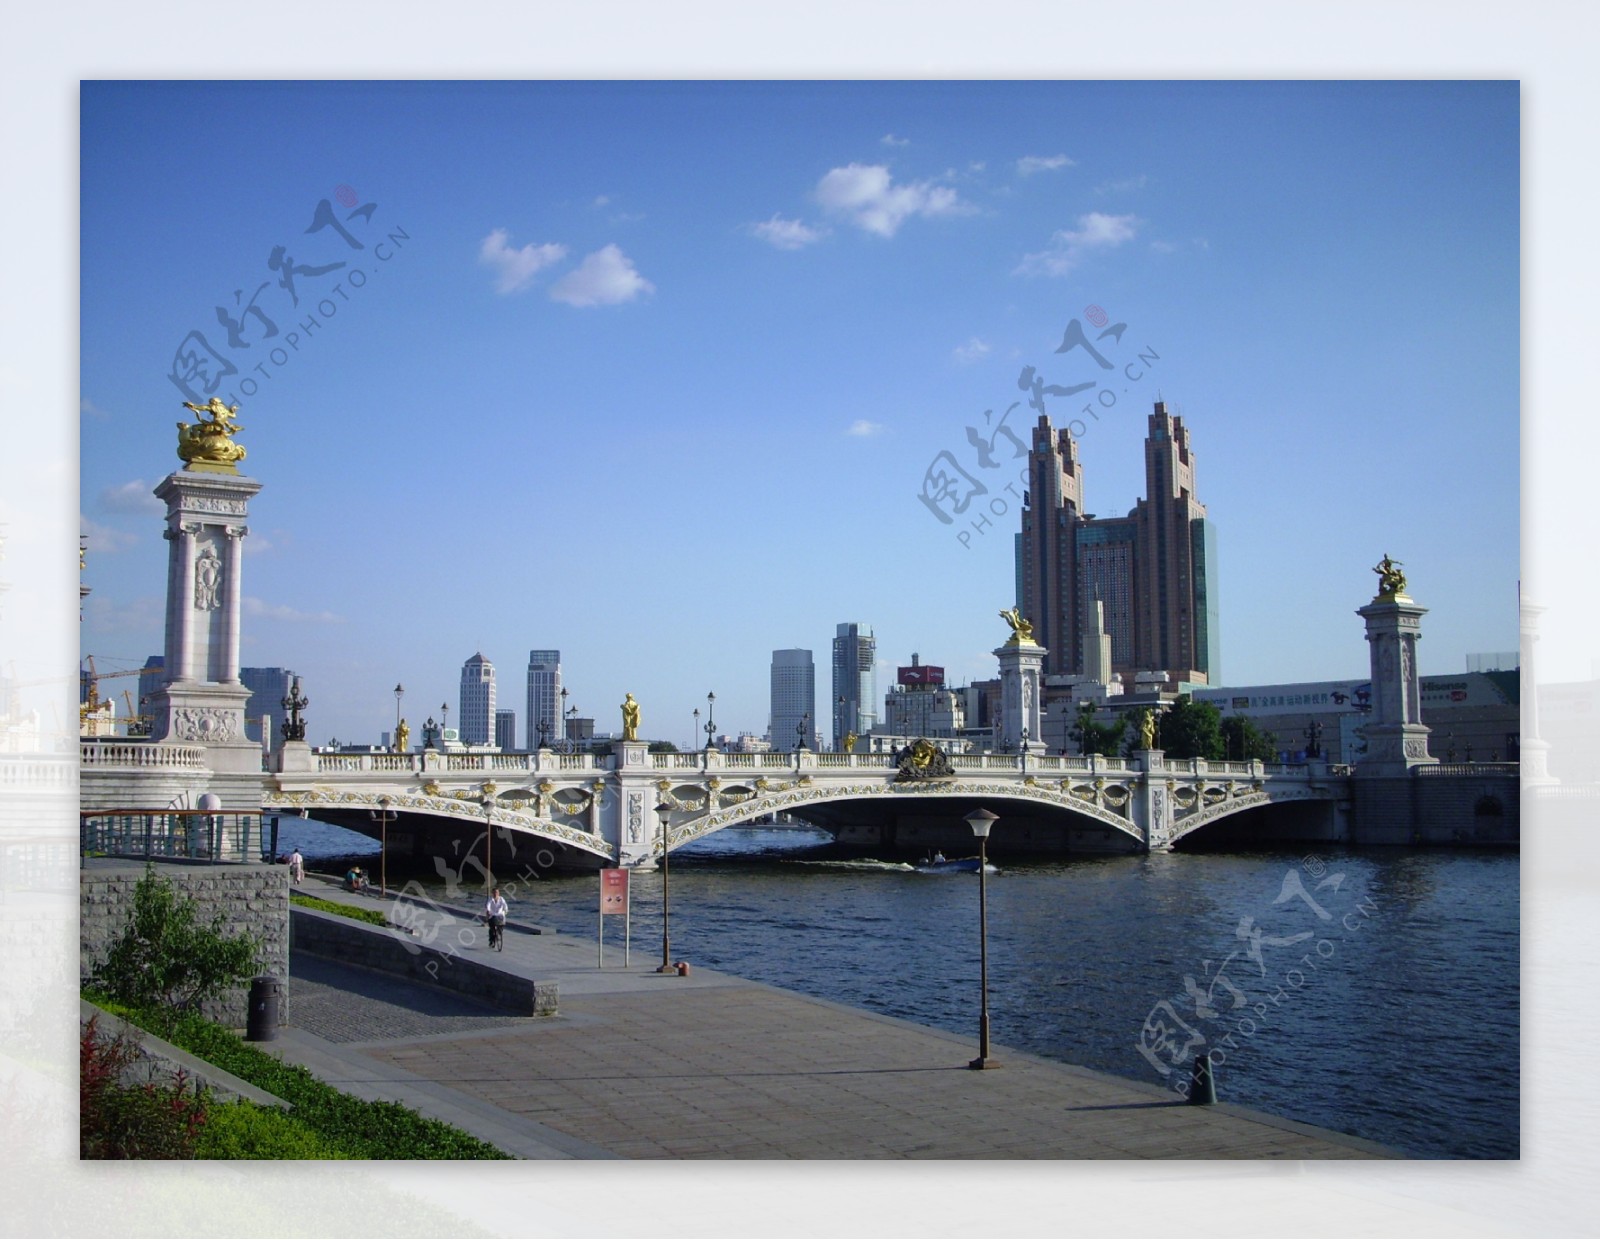 天津北安桥与百货大楼图片